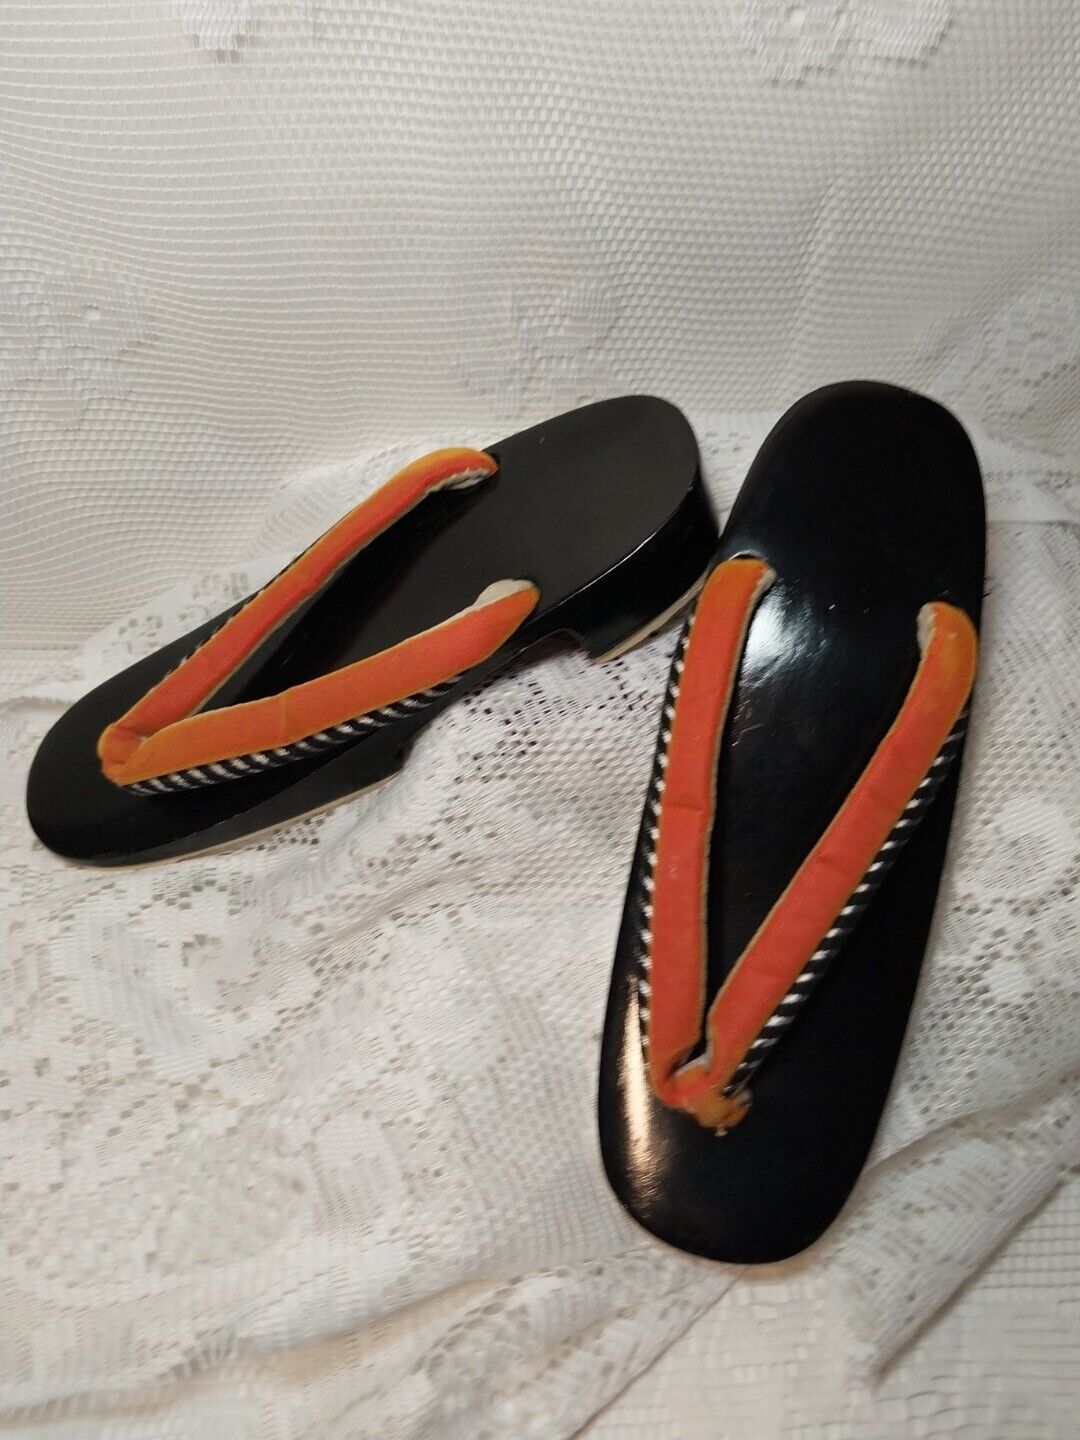 Vintage 50s 60s Japanese Geta Geisha Shoes Wooden Sandals Black Lacquer Orange